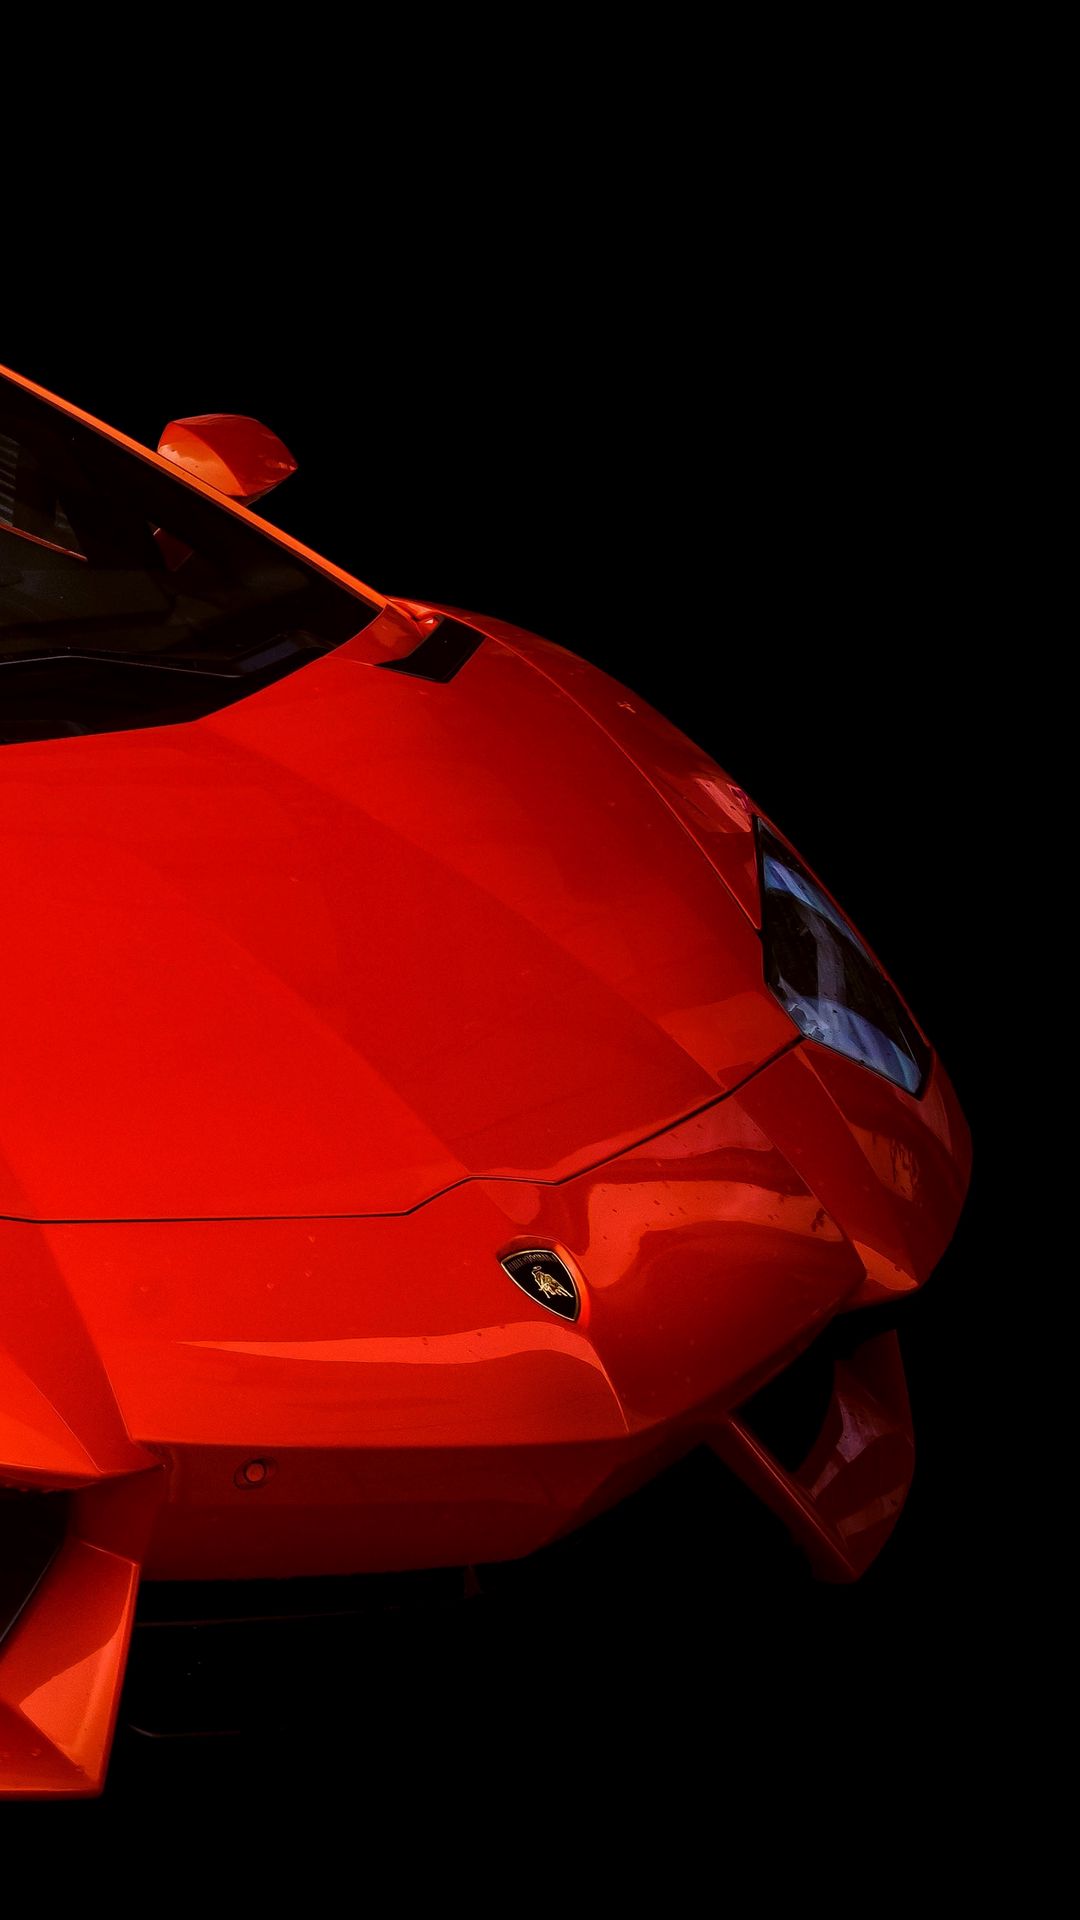 Lamborghini Aventador Full HD Wallpapers Free Download - Best Wallpapers